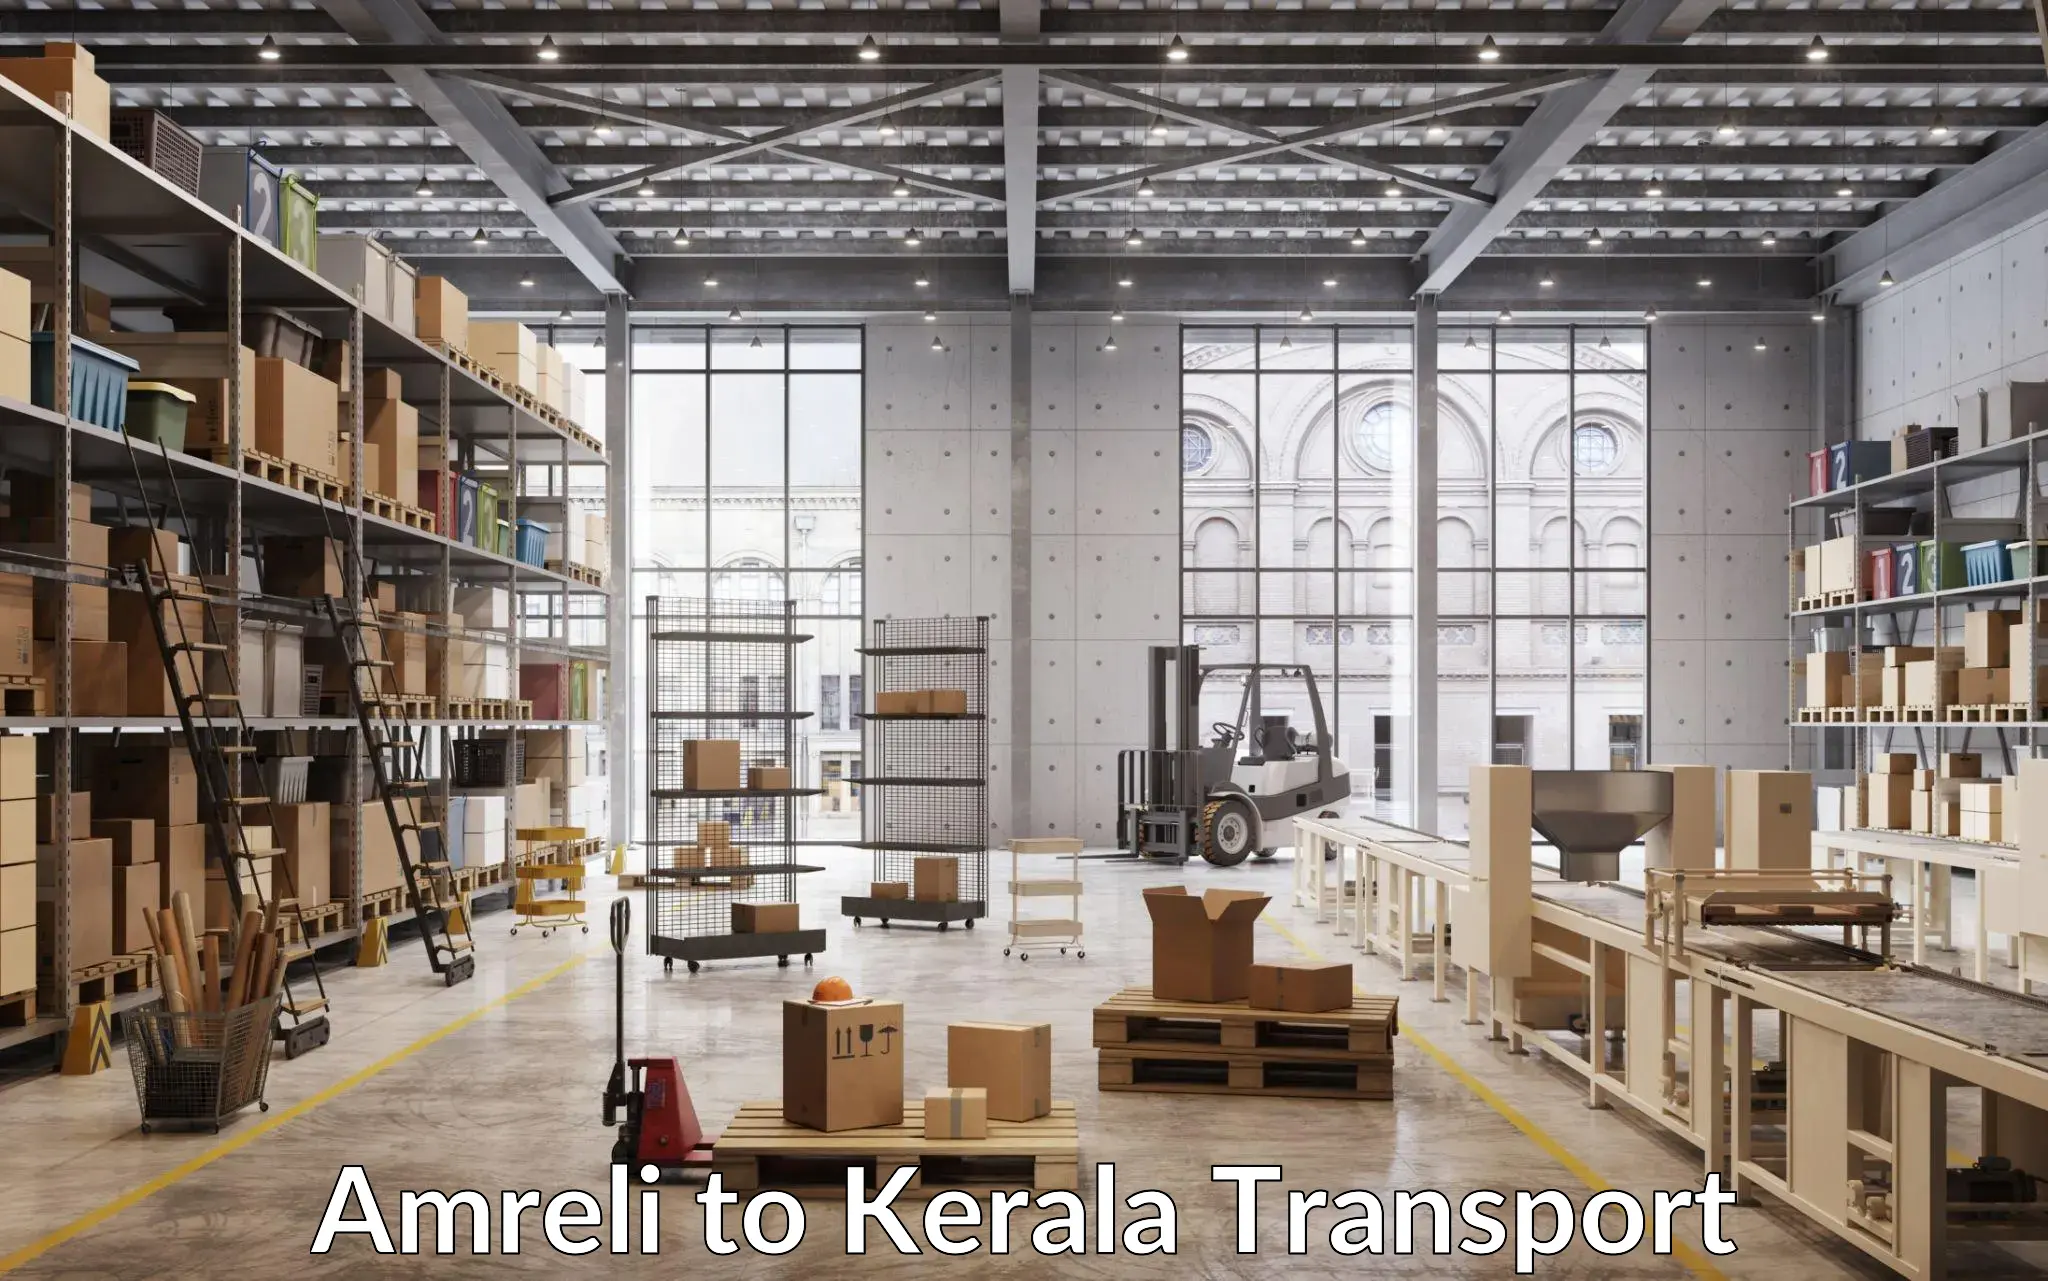 Land transport services in Amreli to Kiliyanthara